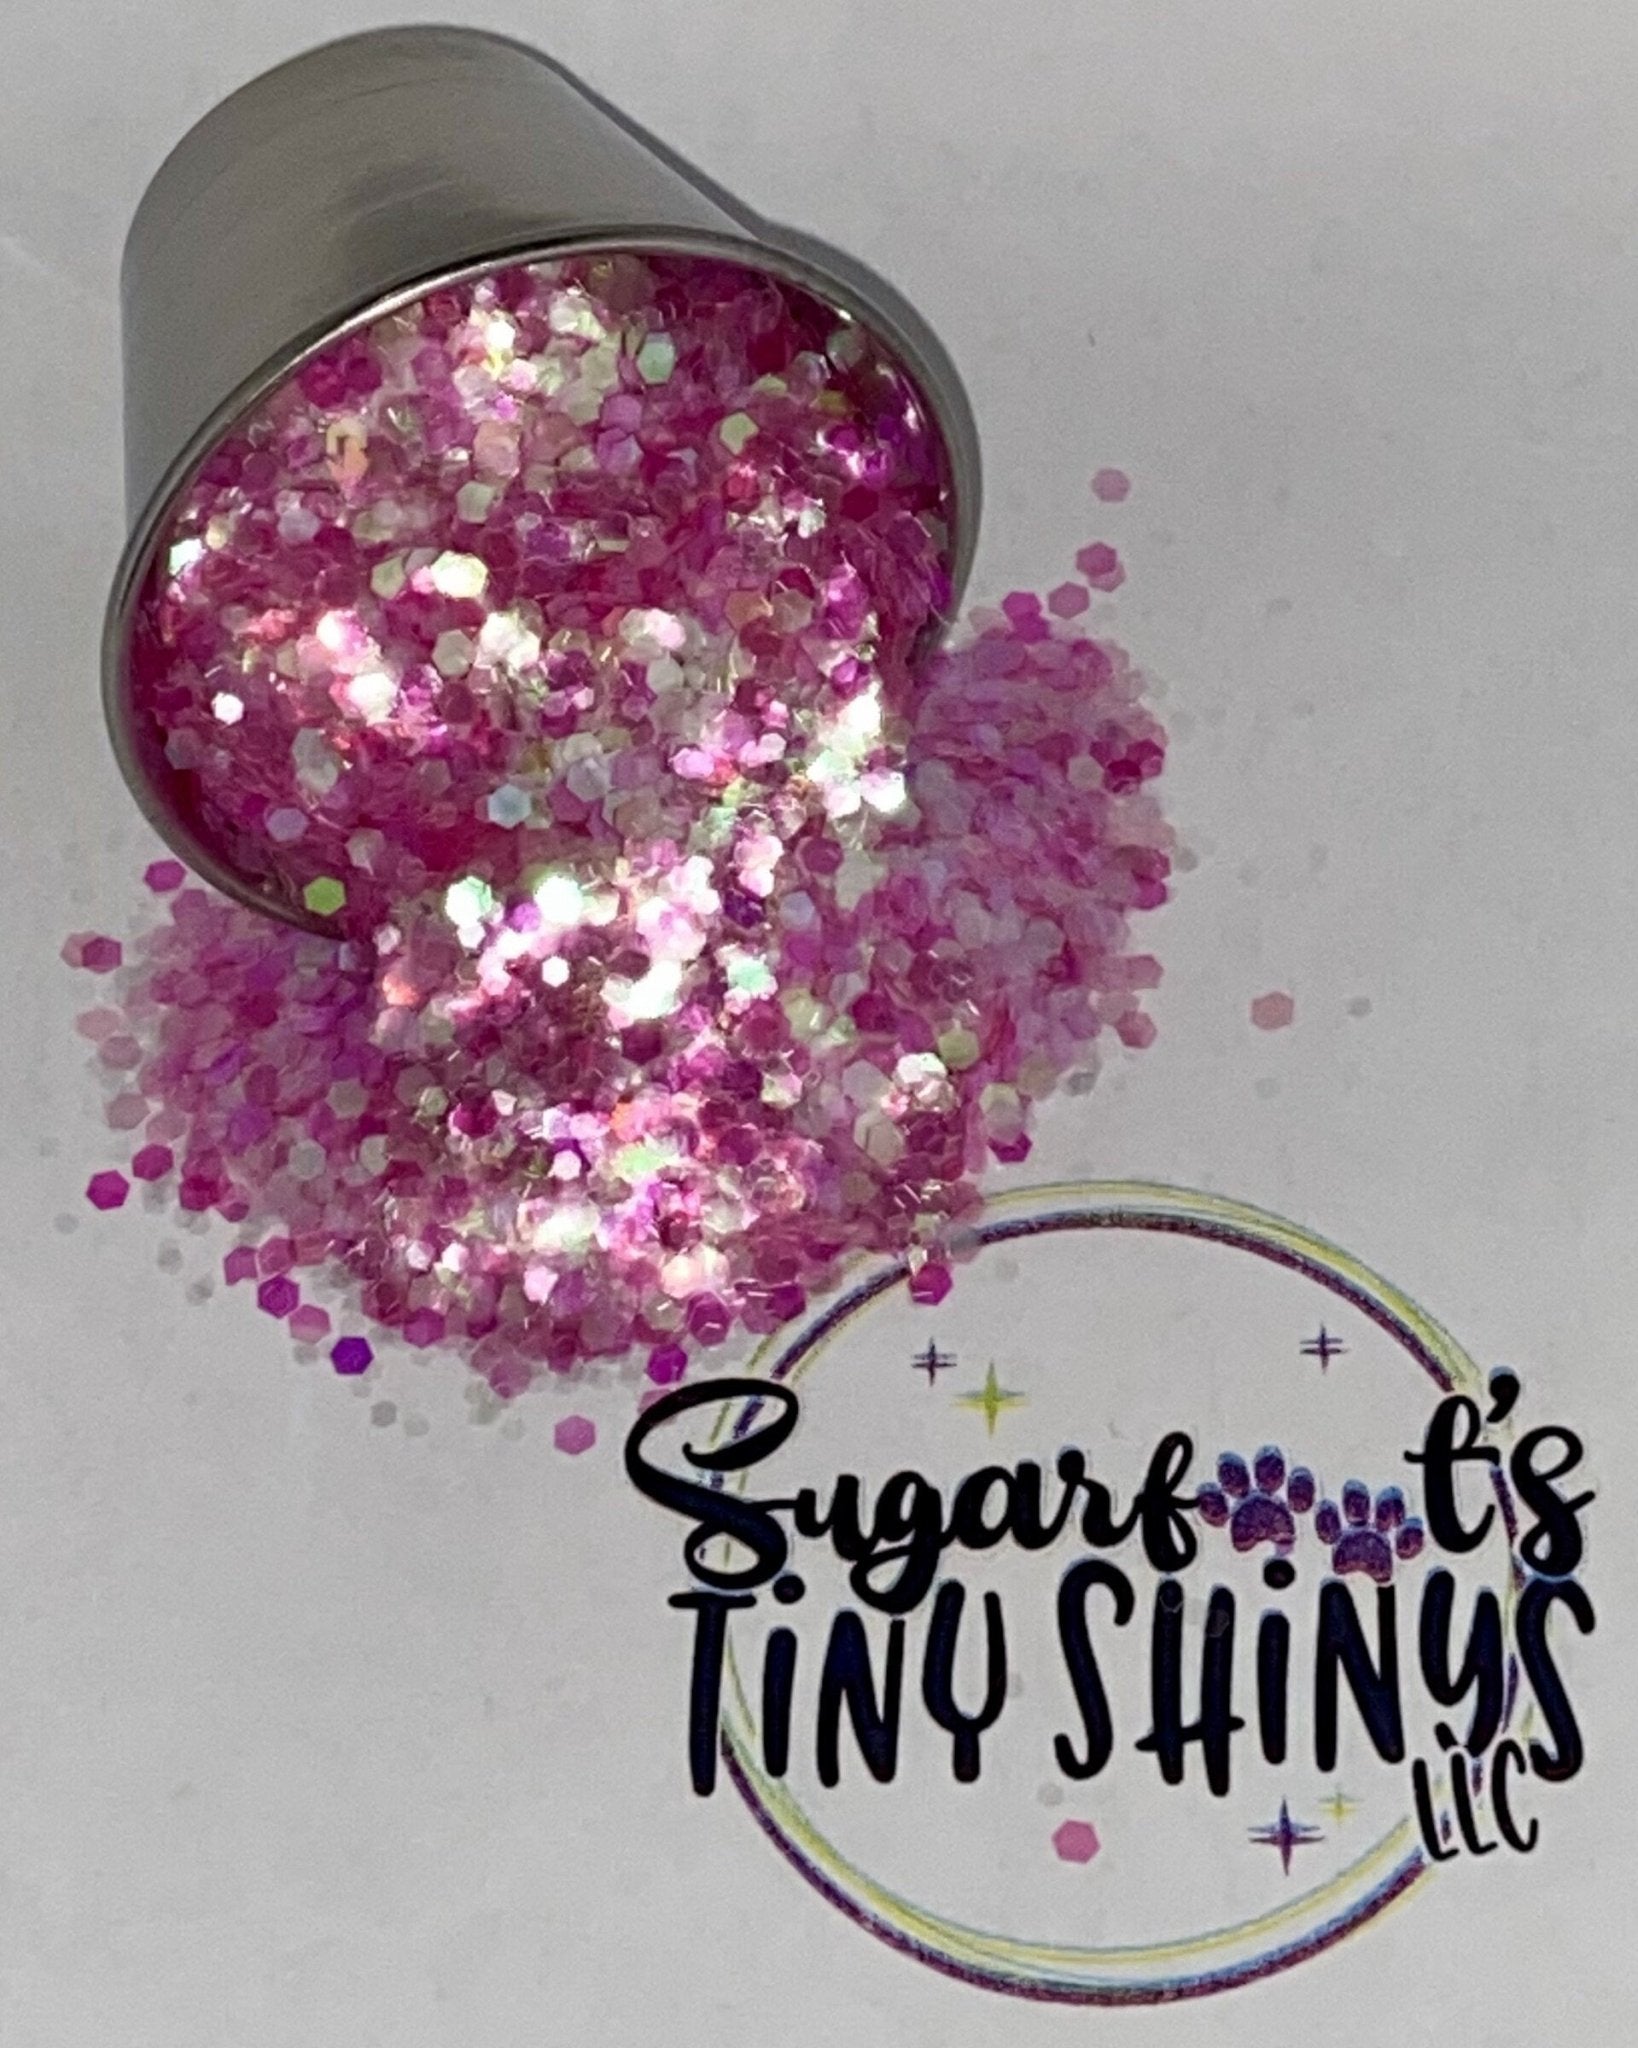 Baby Girl - Sugarfoot's Tiny Shinys, LLC